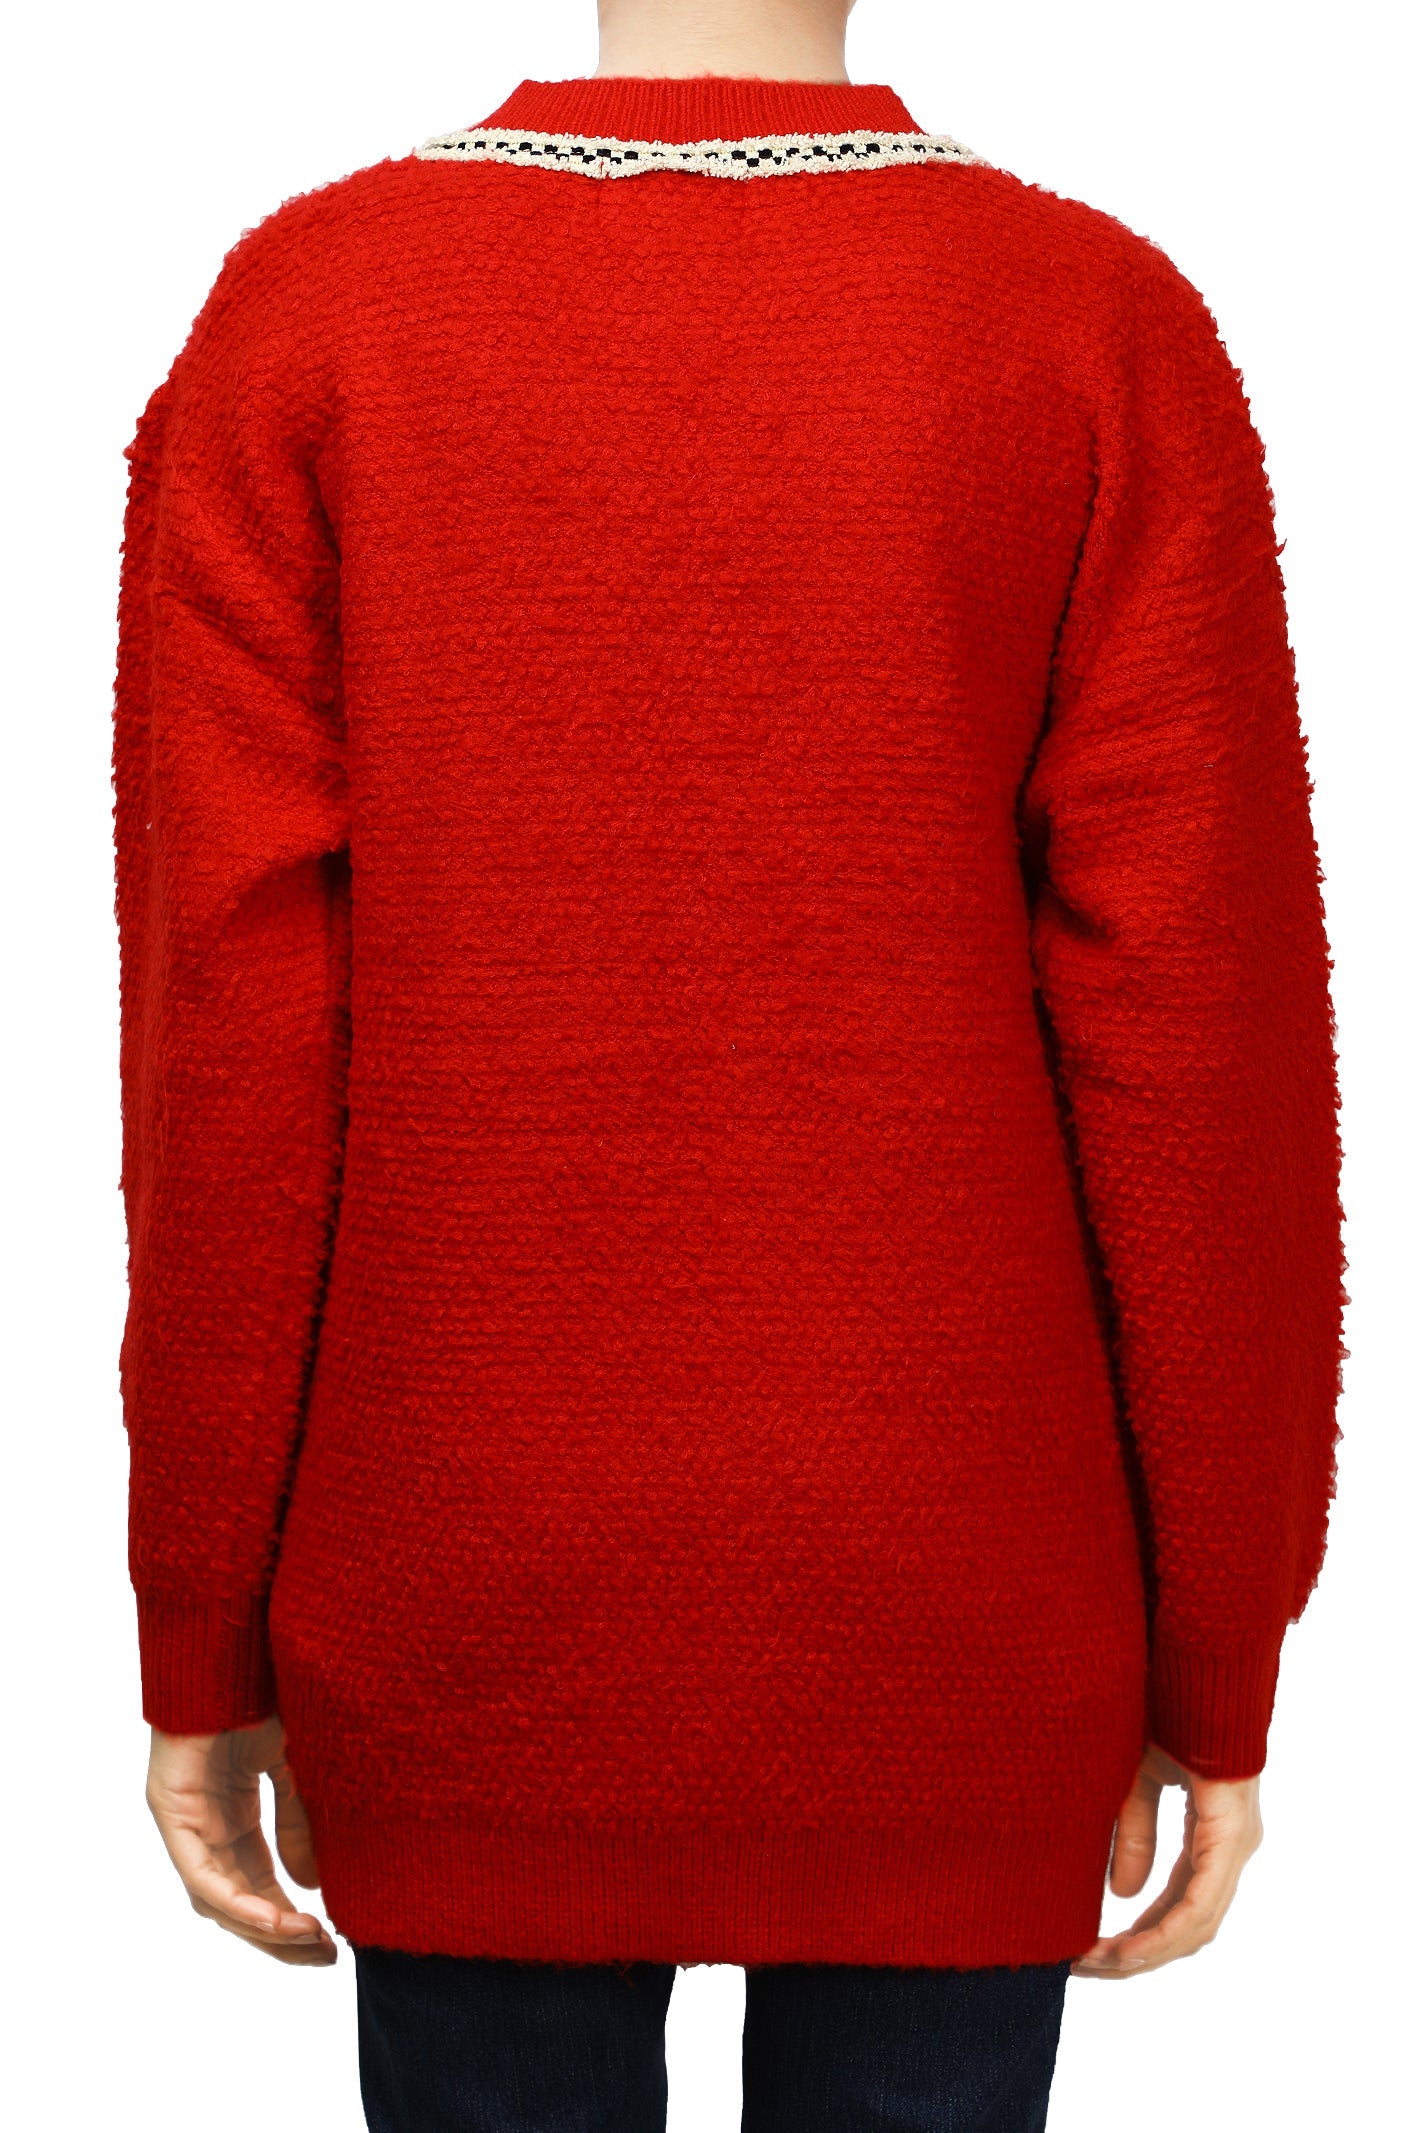 Ladies Sweater SKU: SL992-RED - Diners